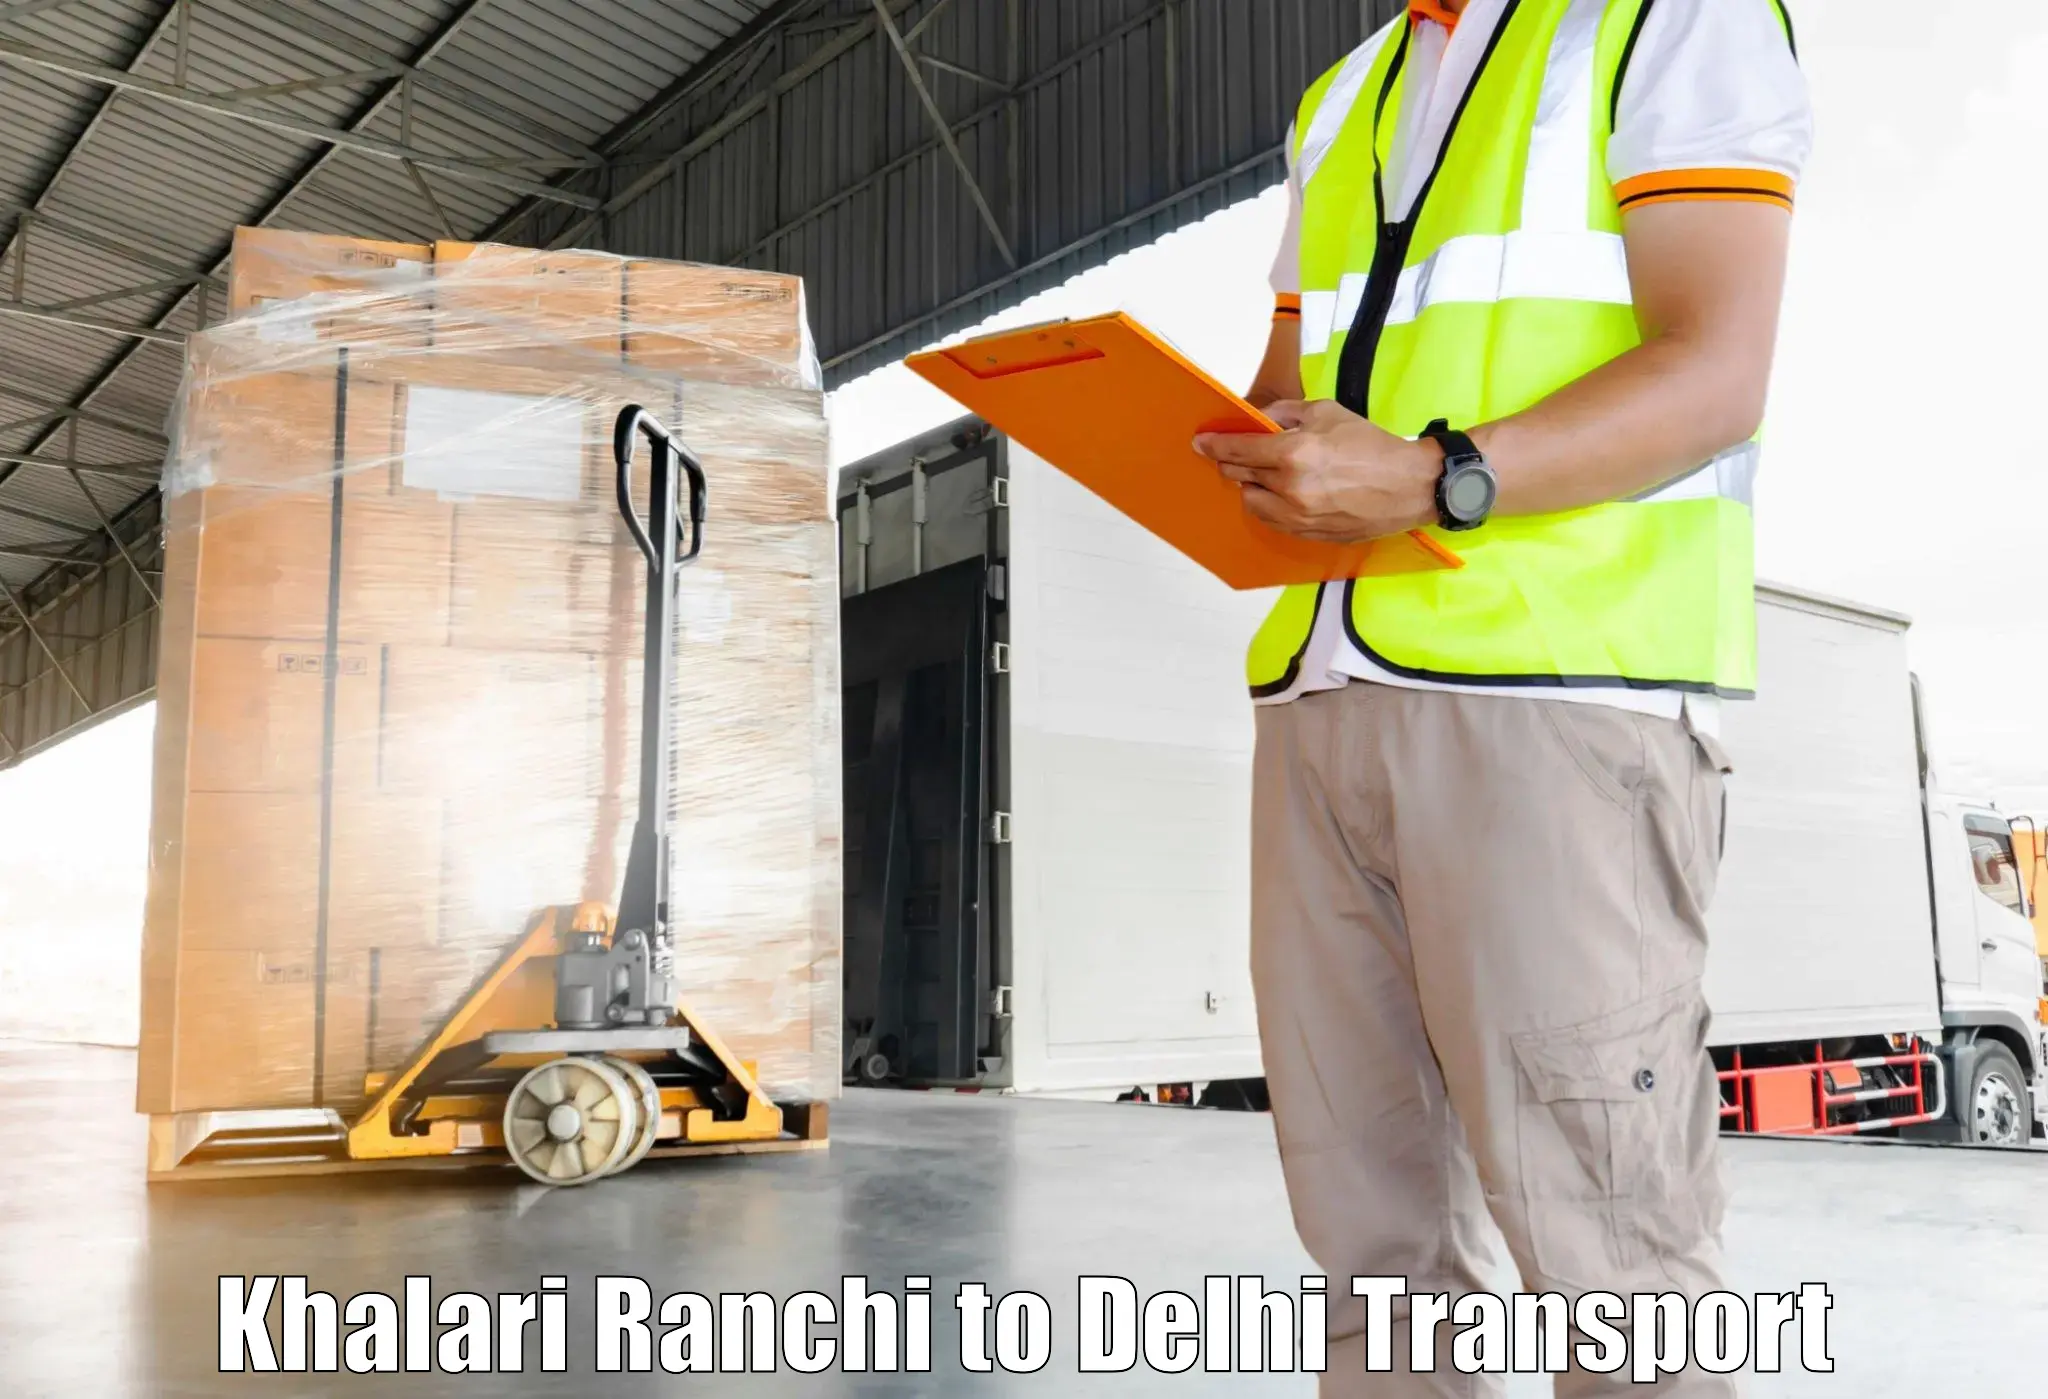 Air cargo transport services Khalari Ranchi to Delhi